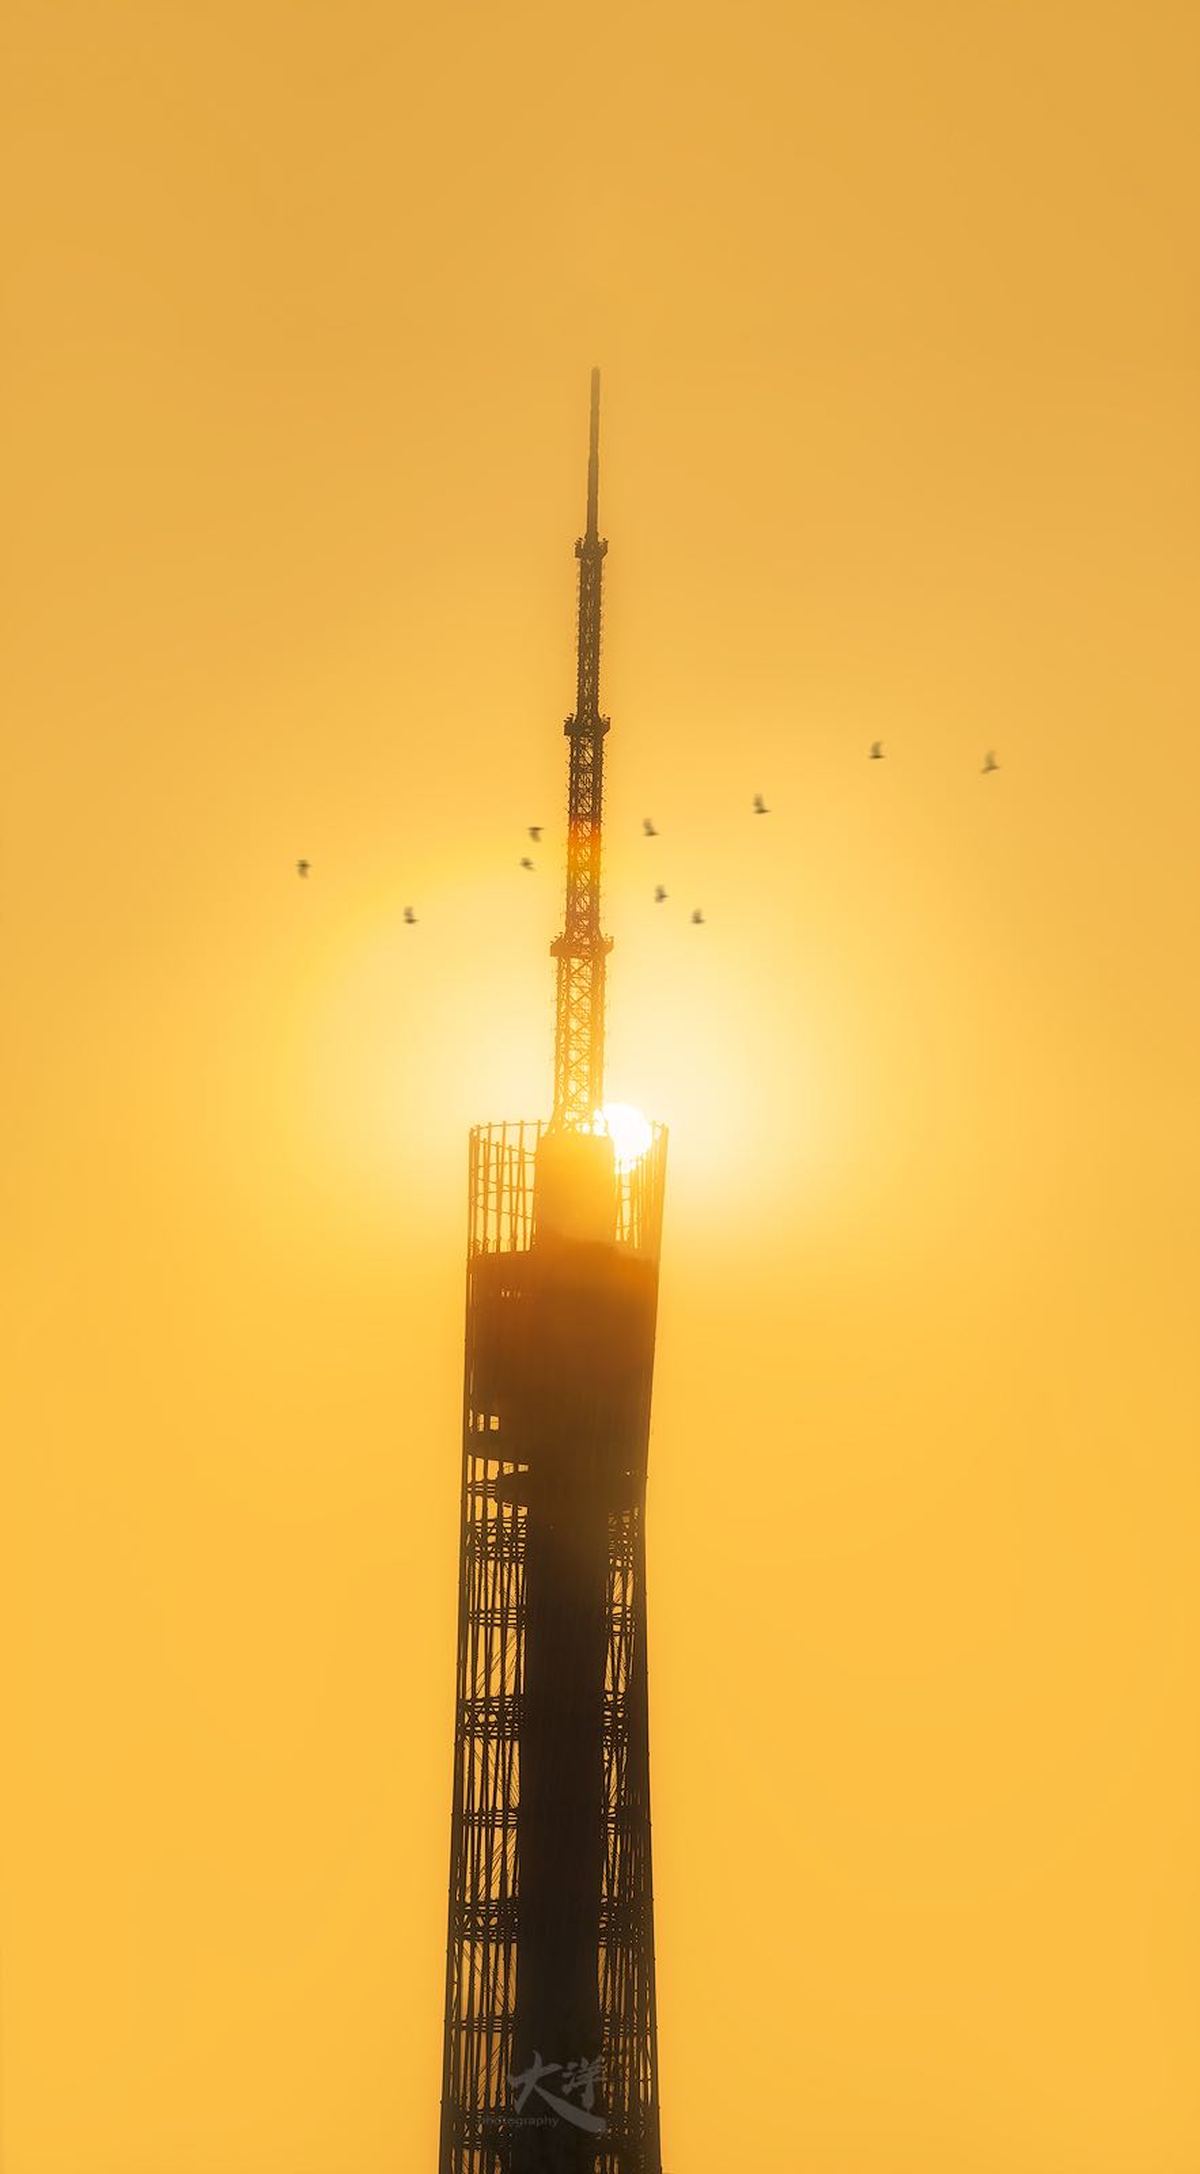 一座高塔周围飞翔着鸟儿 夕阳以橙色天空为背景。